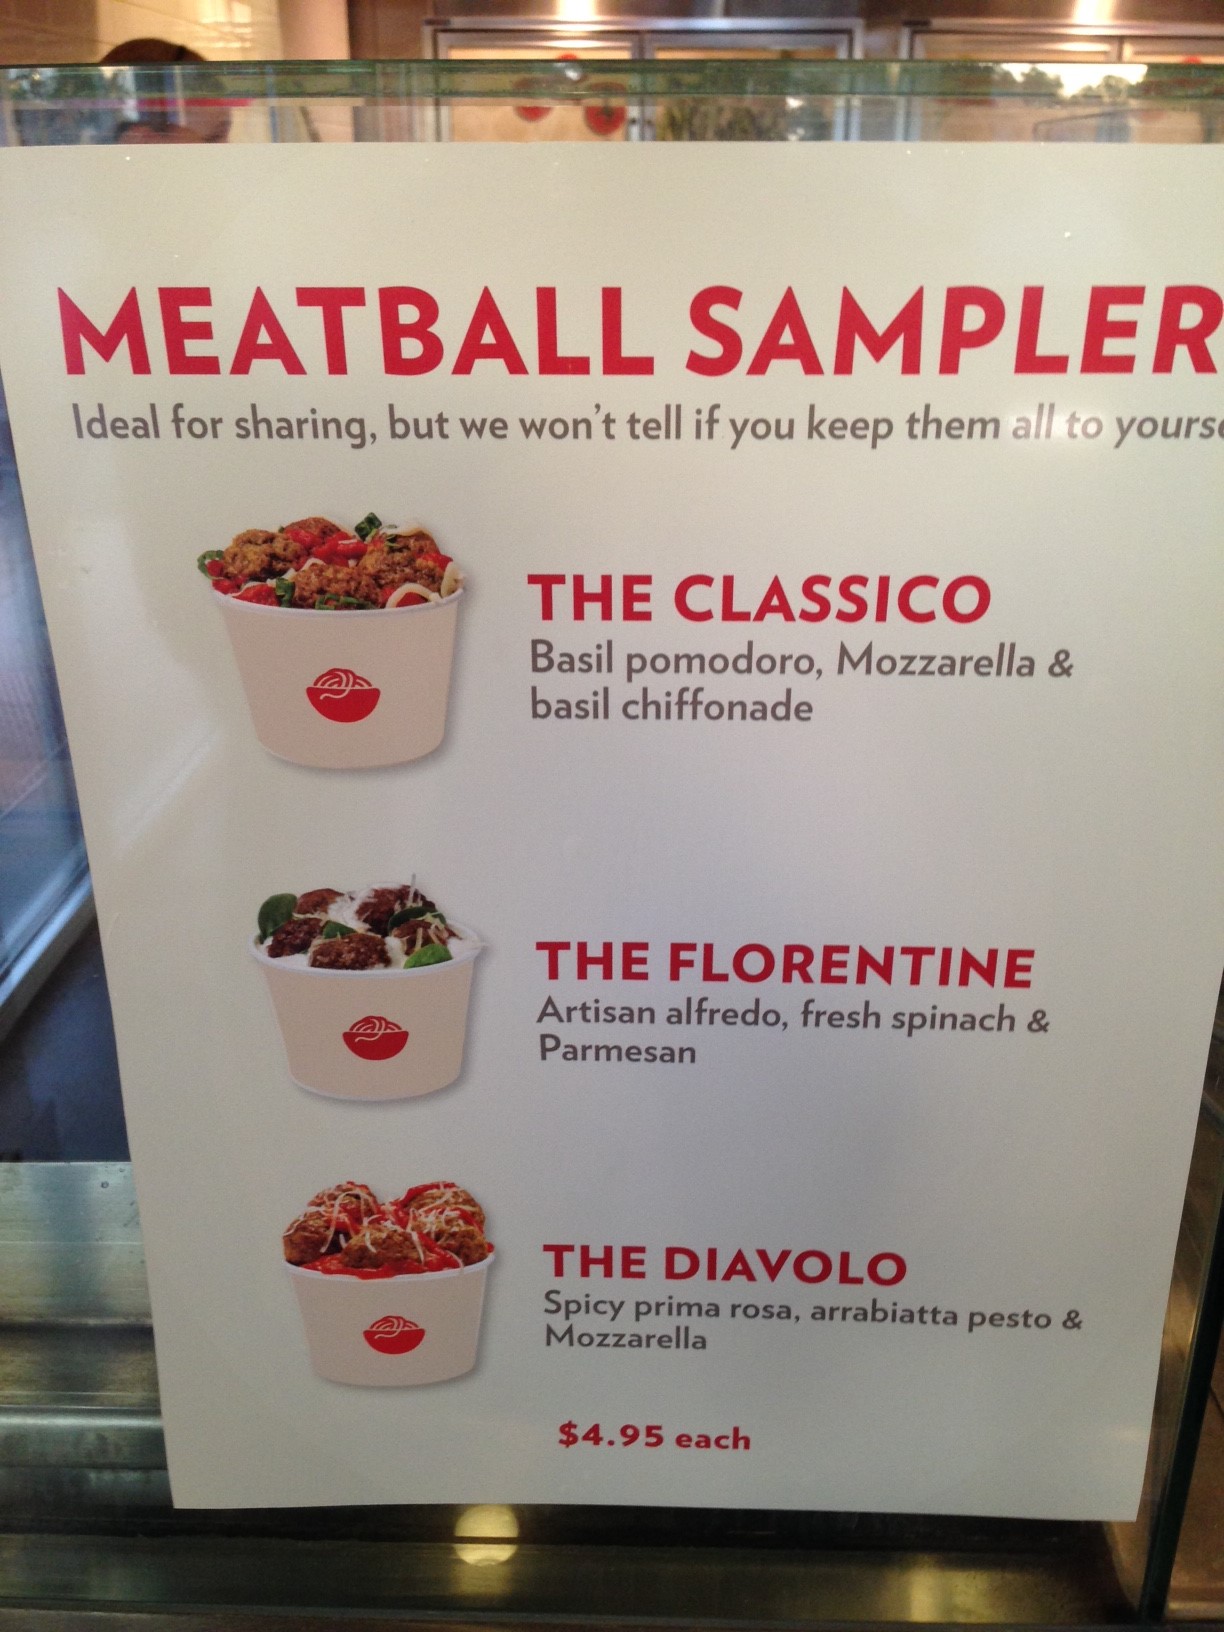 Meatball-sampler.jpg